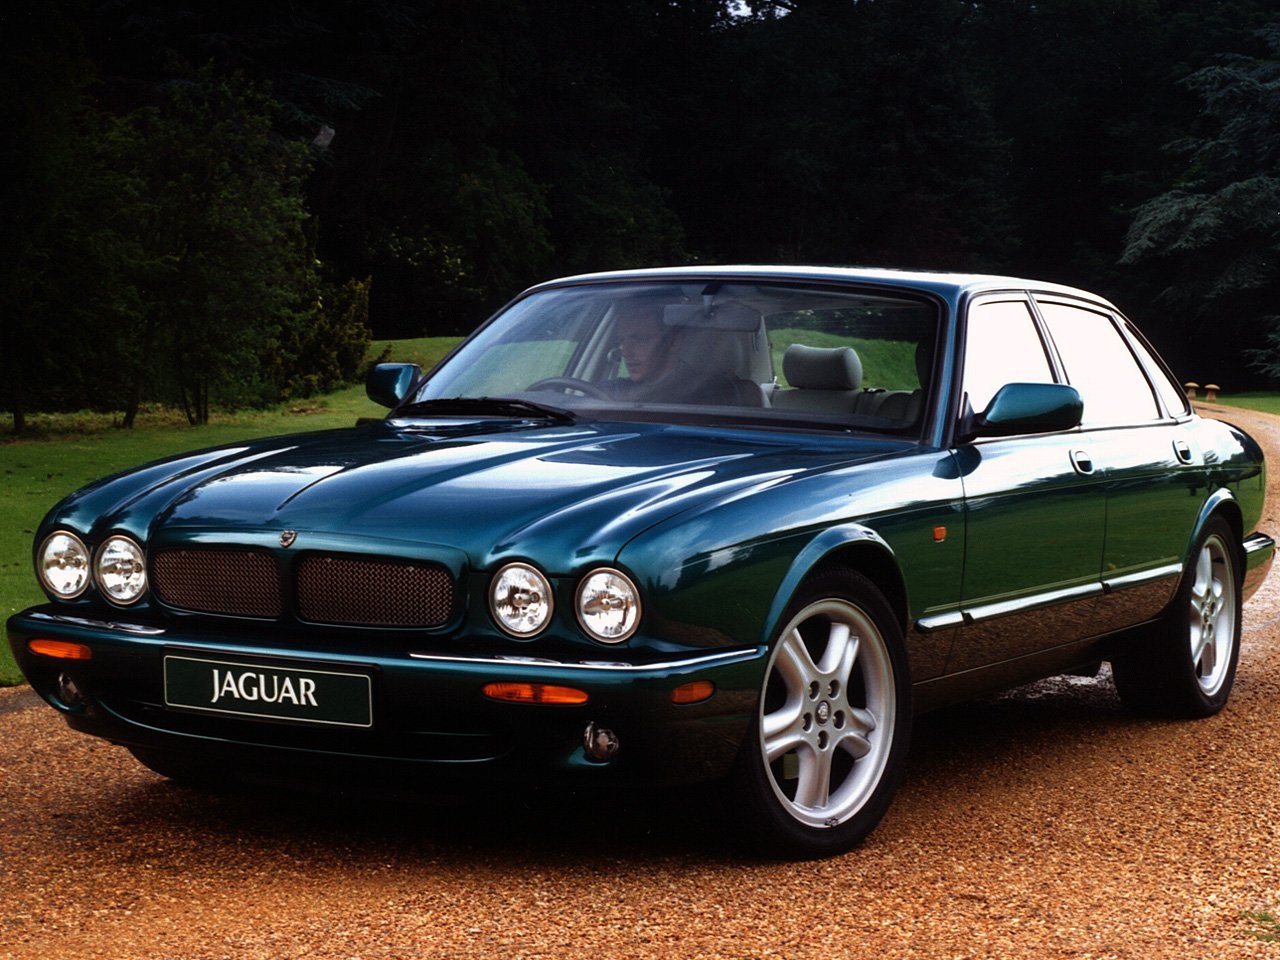 Jaguar XJR 1994 - 1997